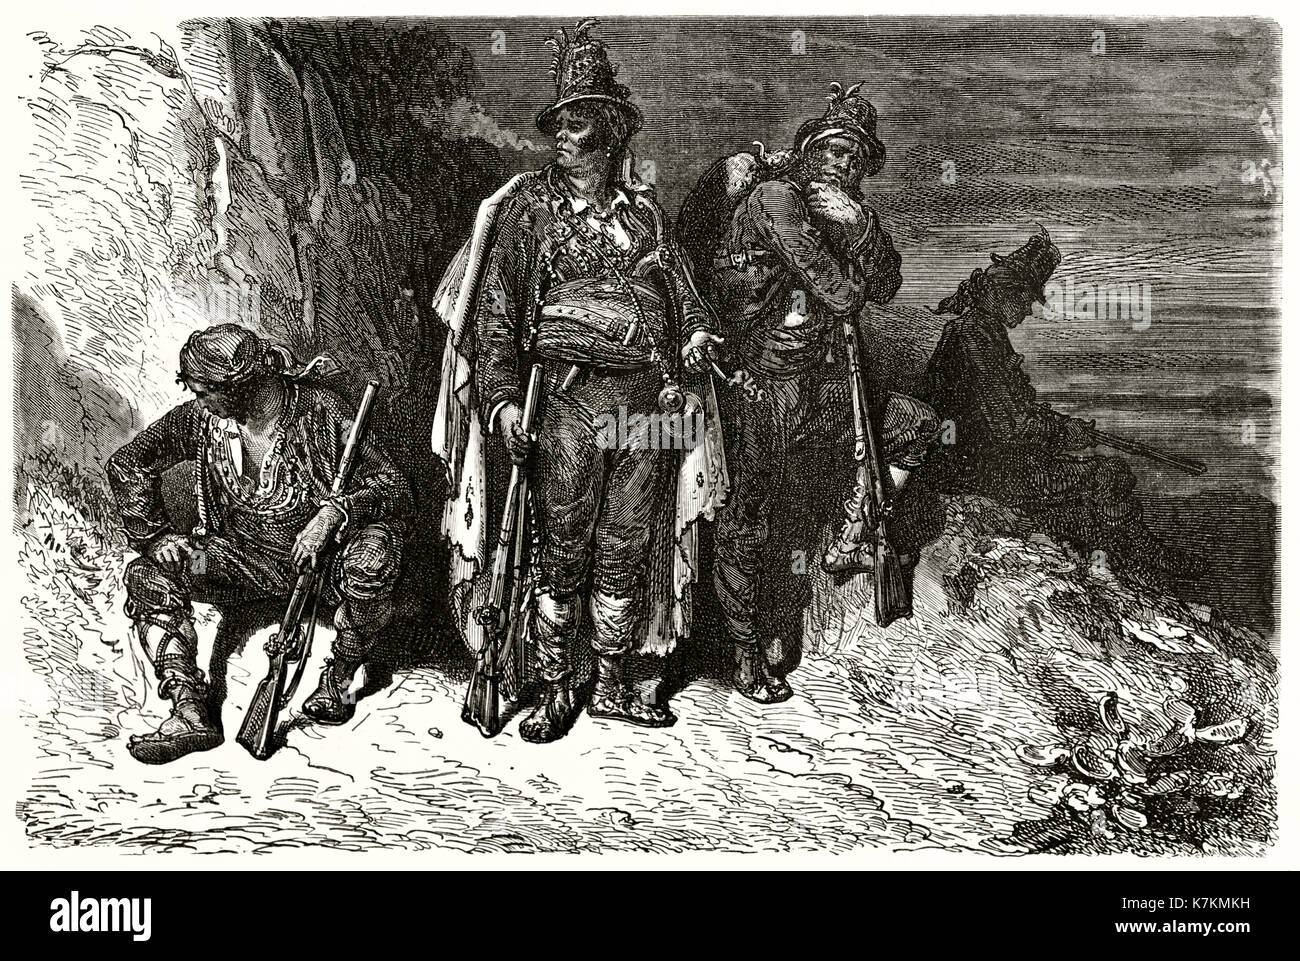 Old illustration depicting Mossos d'Escuadra: police force of Catalonia, Spain. By Dore, publ. on Le Tour du Monde, Paris, 1862 Stock Photo